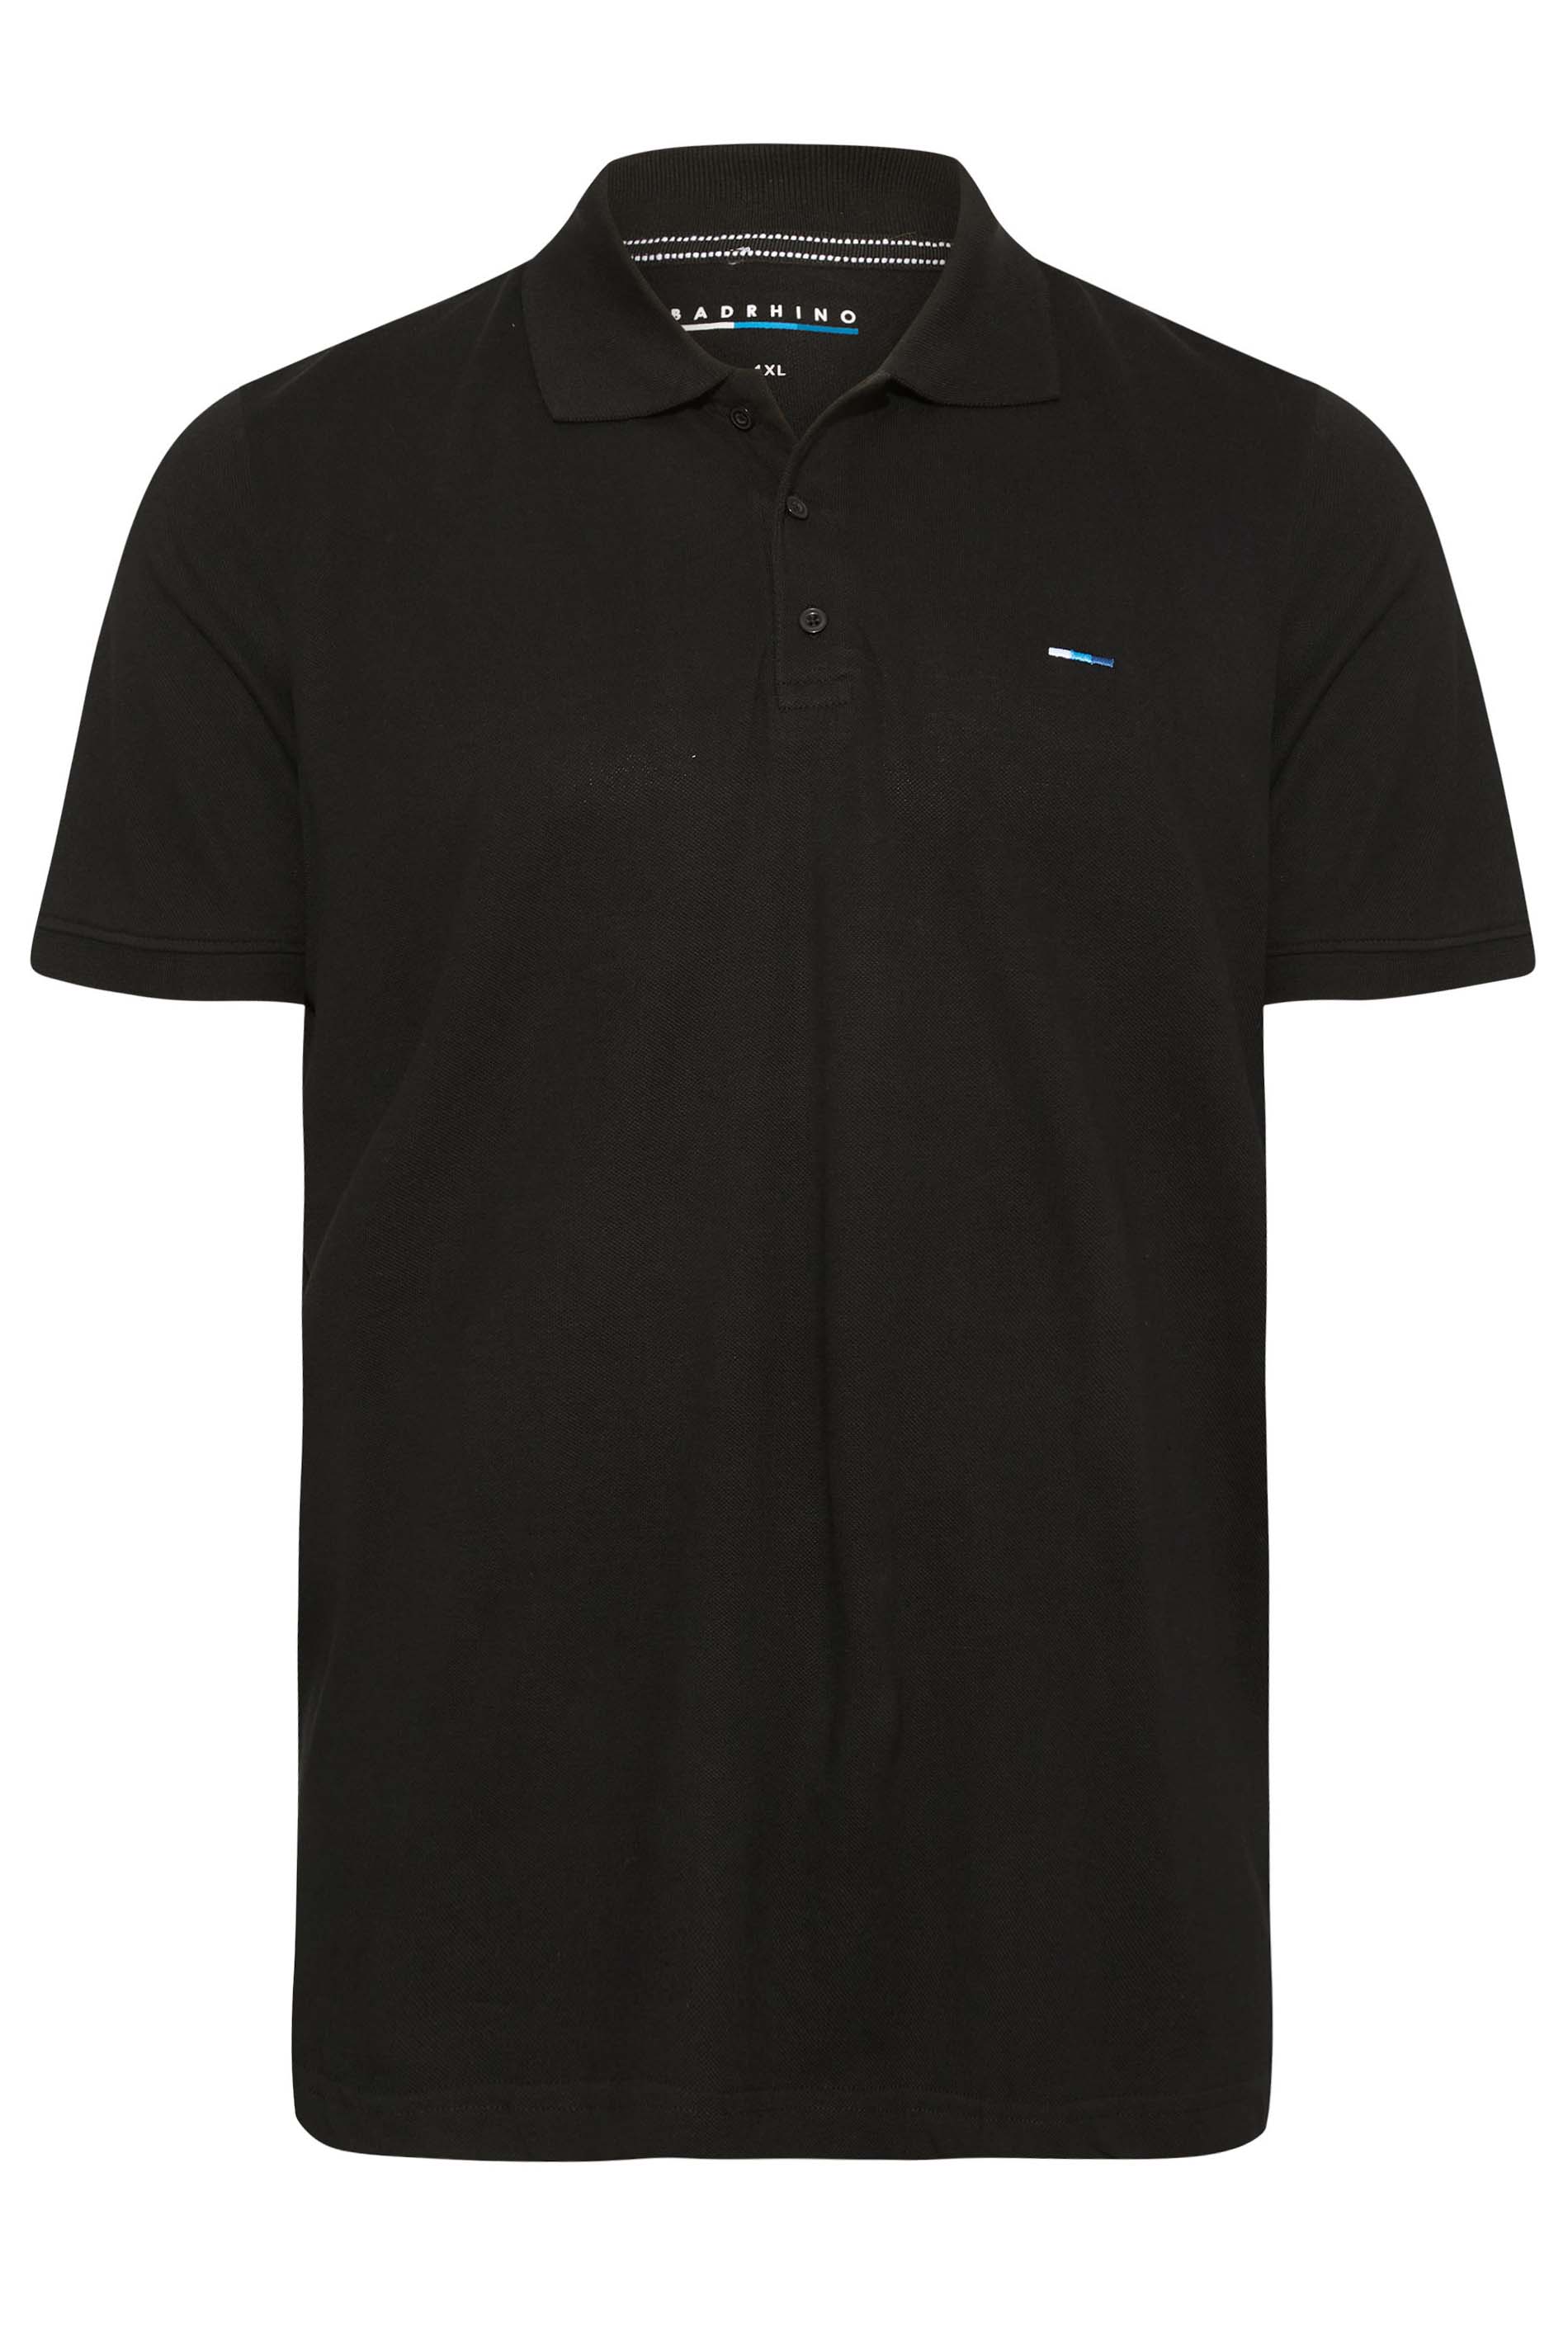 BadRhino Black Essential Polo Shirt | BadRhino 3